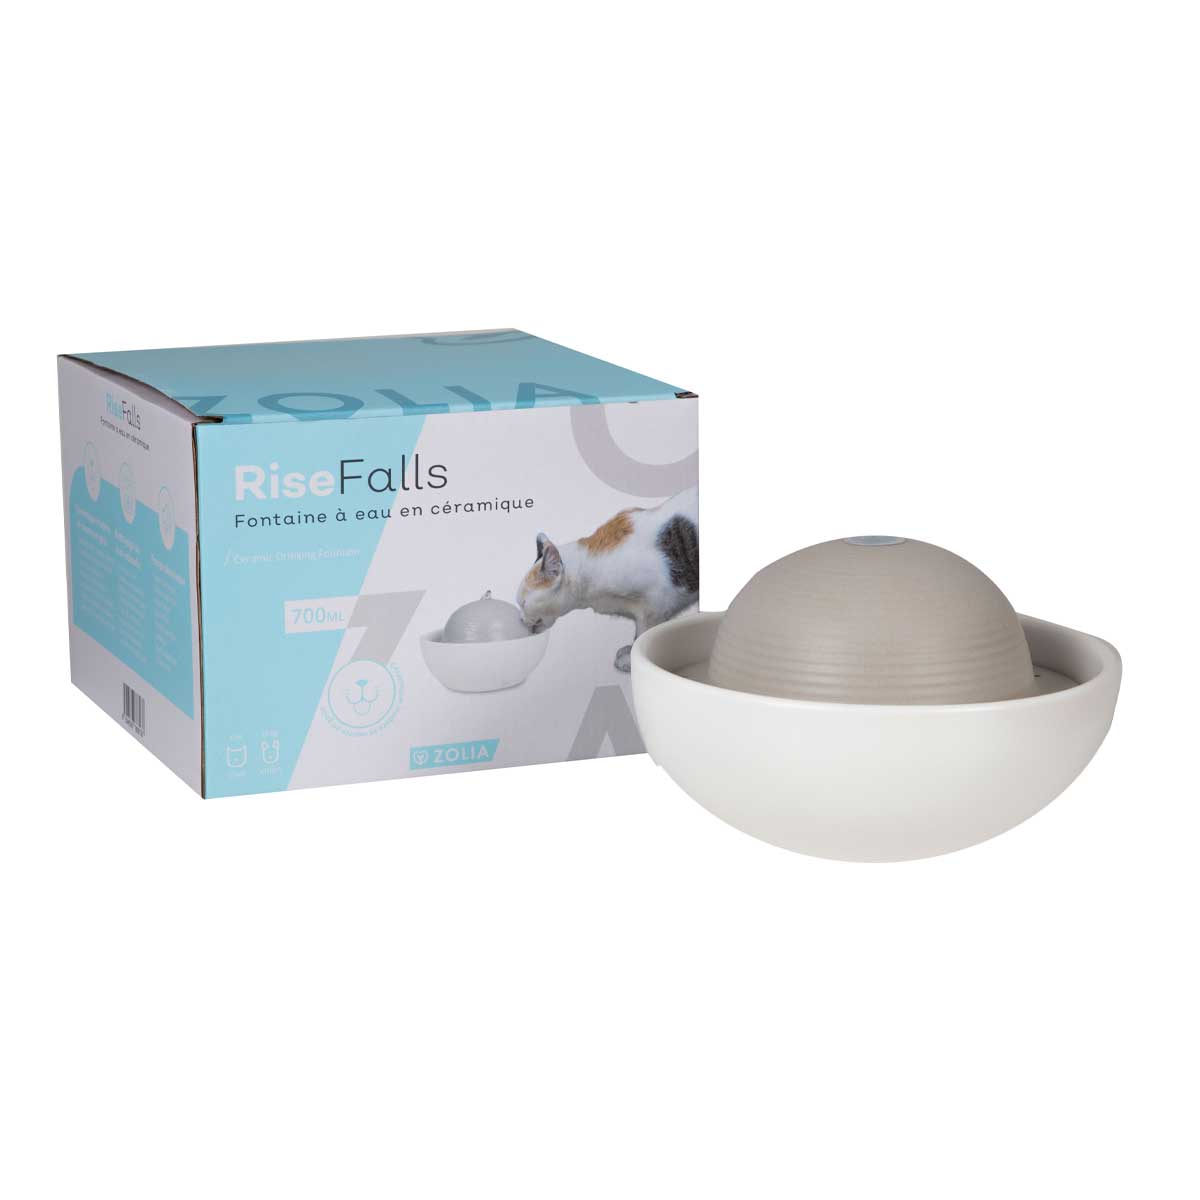 Zolia Rise Falls – 700 ml – Keramikbrunnen für Katzen und kleine Hunde